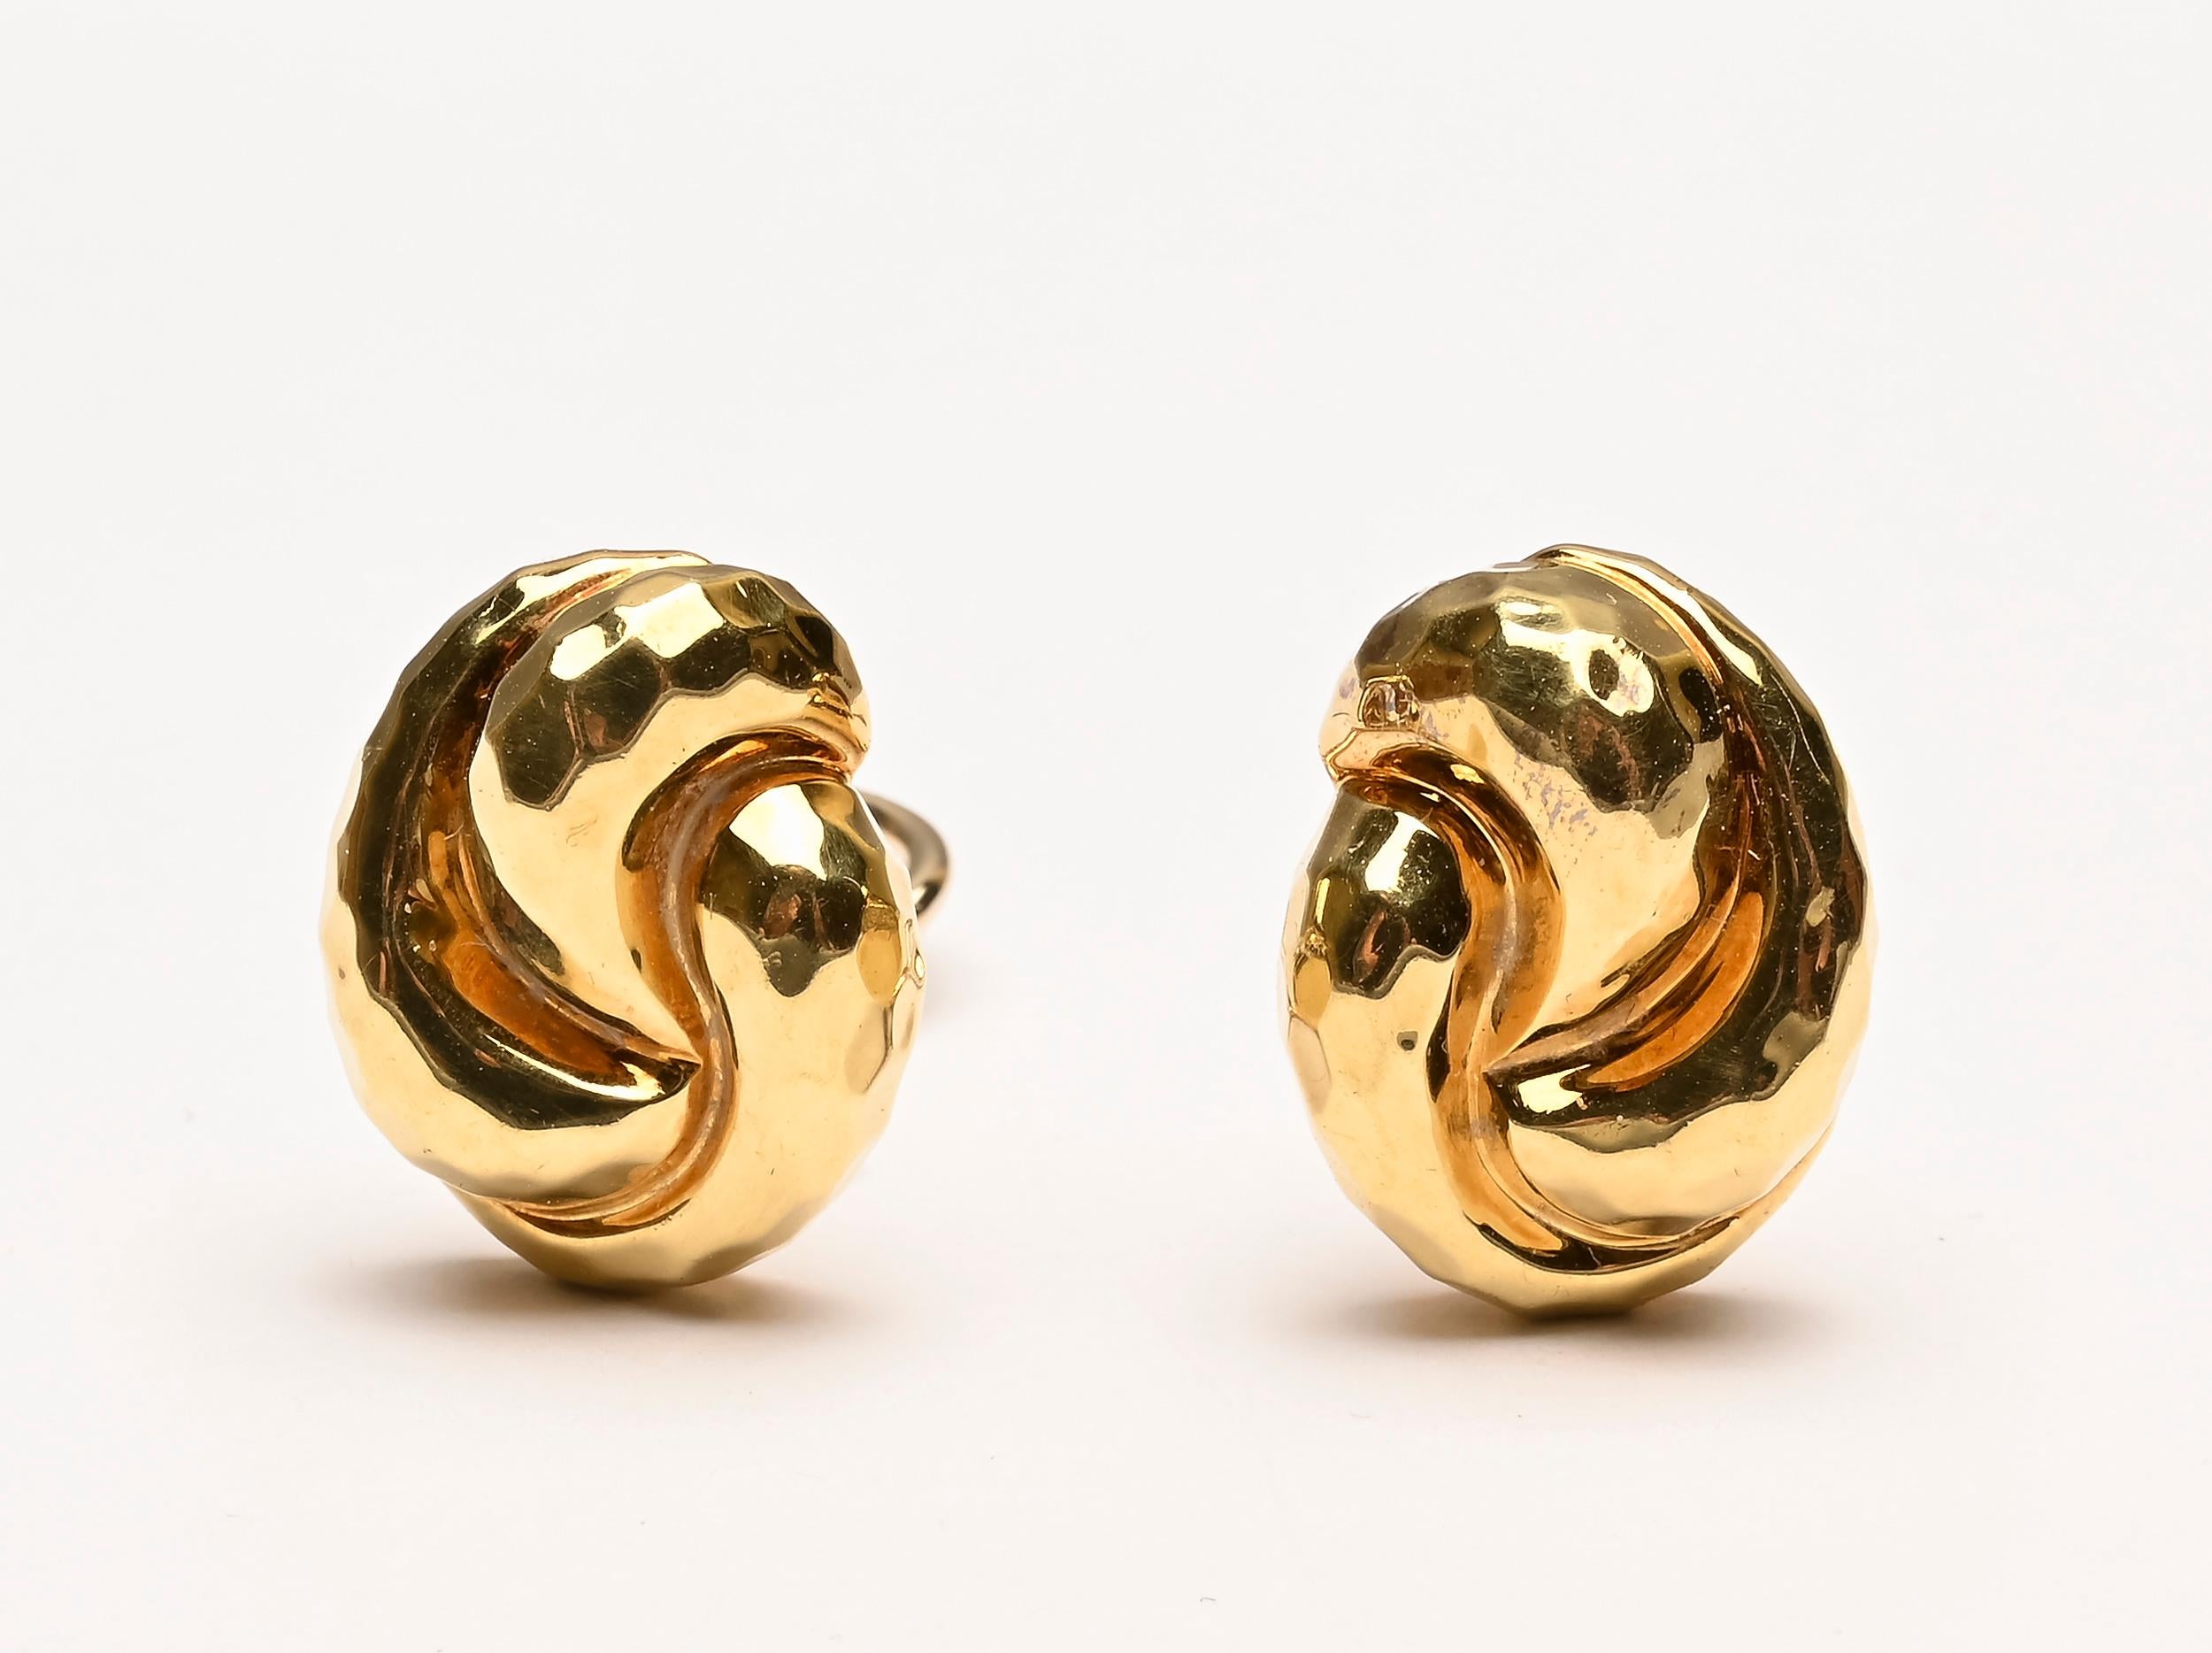 Henry Dunay 18 Karat Goldknoten-Ohrringe, die typisch für sein Design sind, aber kleiner als seine übliche Größe. Die Ohrringe messen einen halben Zoll breit und 9/16 Zoll lang. Sie sind aus gehämmertem Gold gefertigt, das zu Dunays Markenzeichen